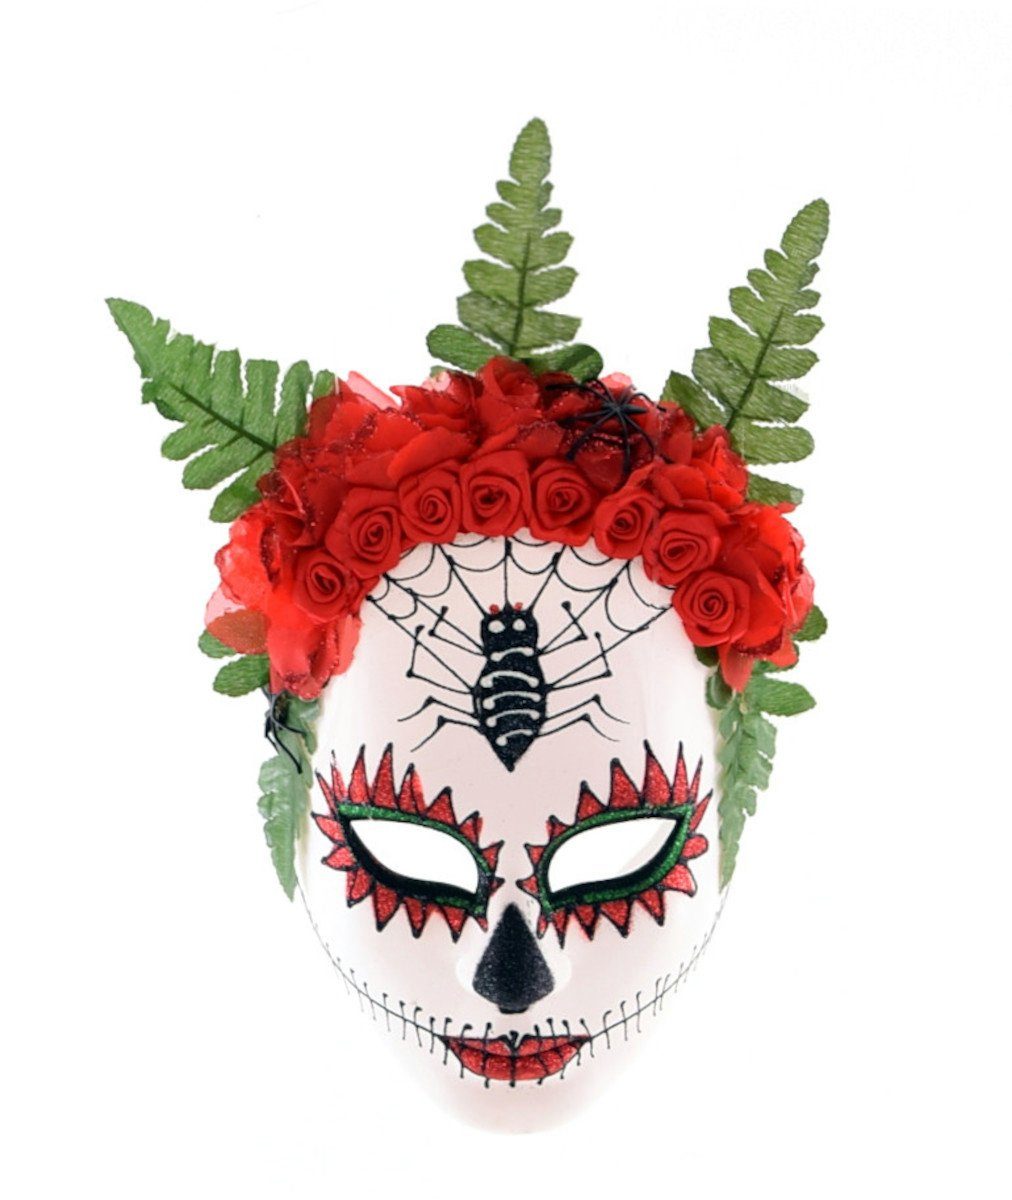 F.I.G. Kostüm Halloween - Maske mit Blumen und Spinne (18x22cm)